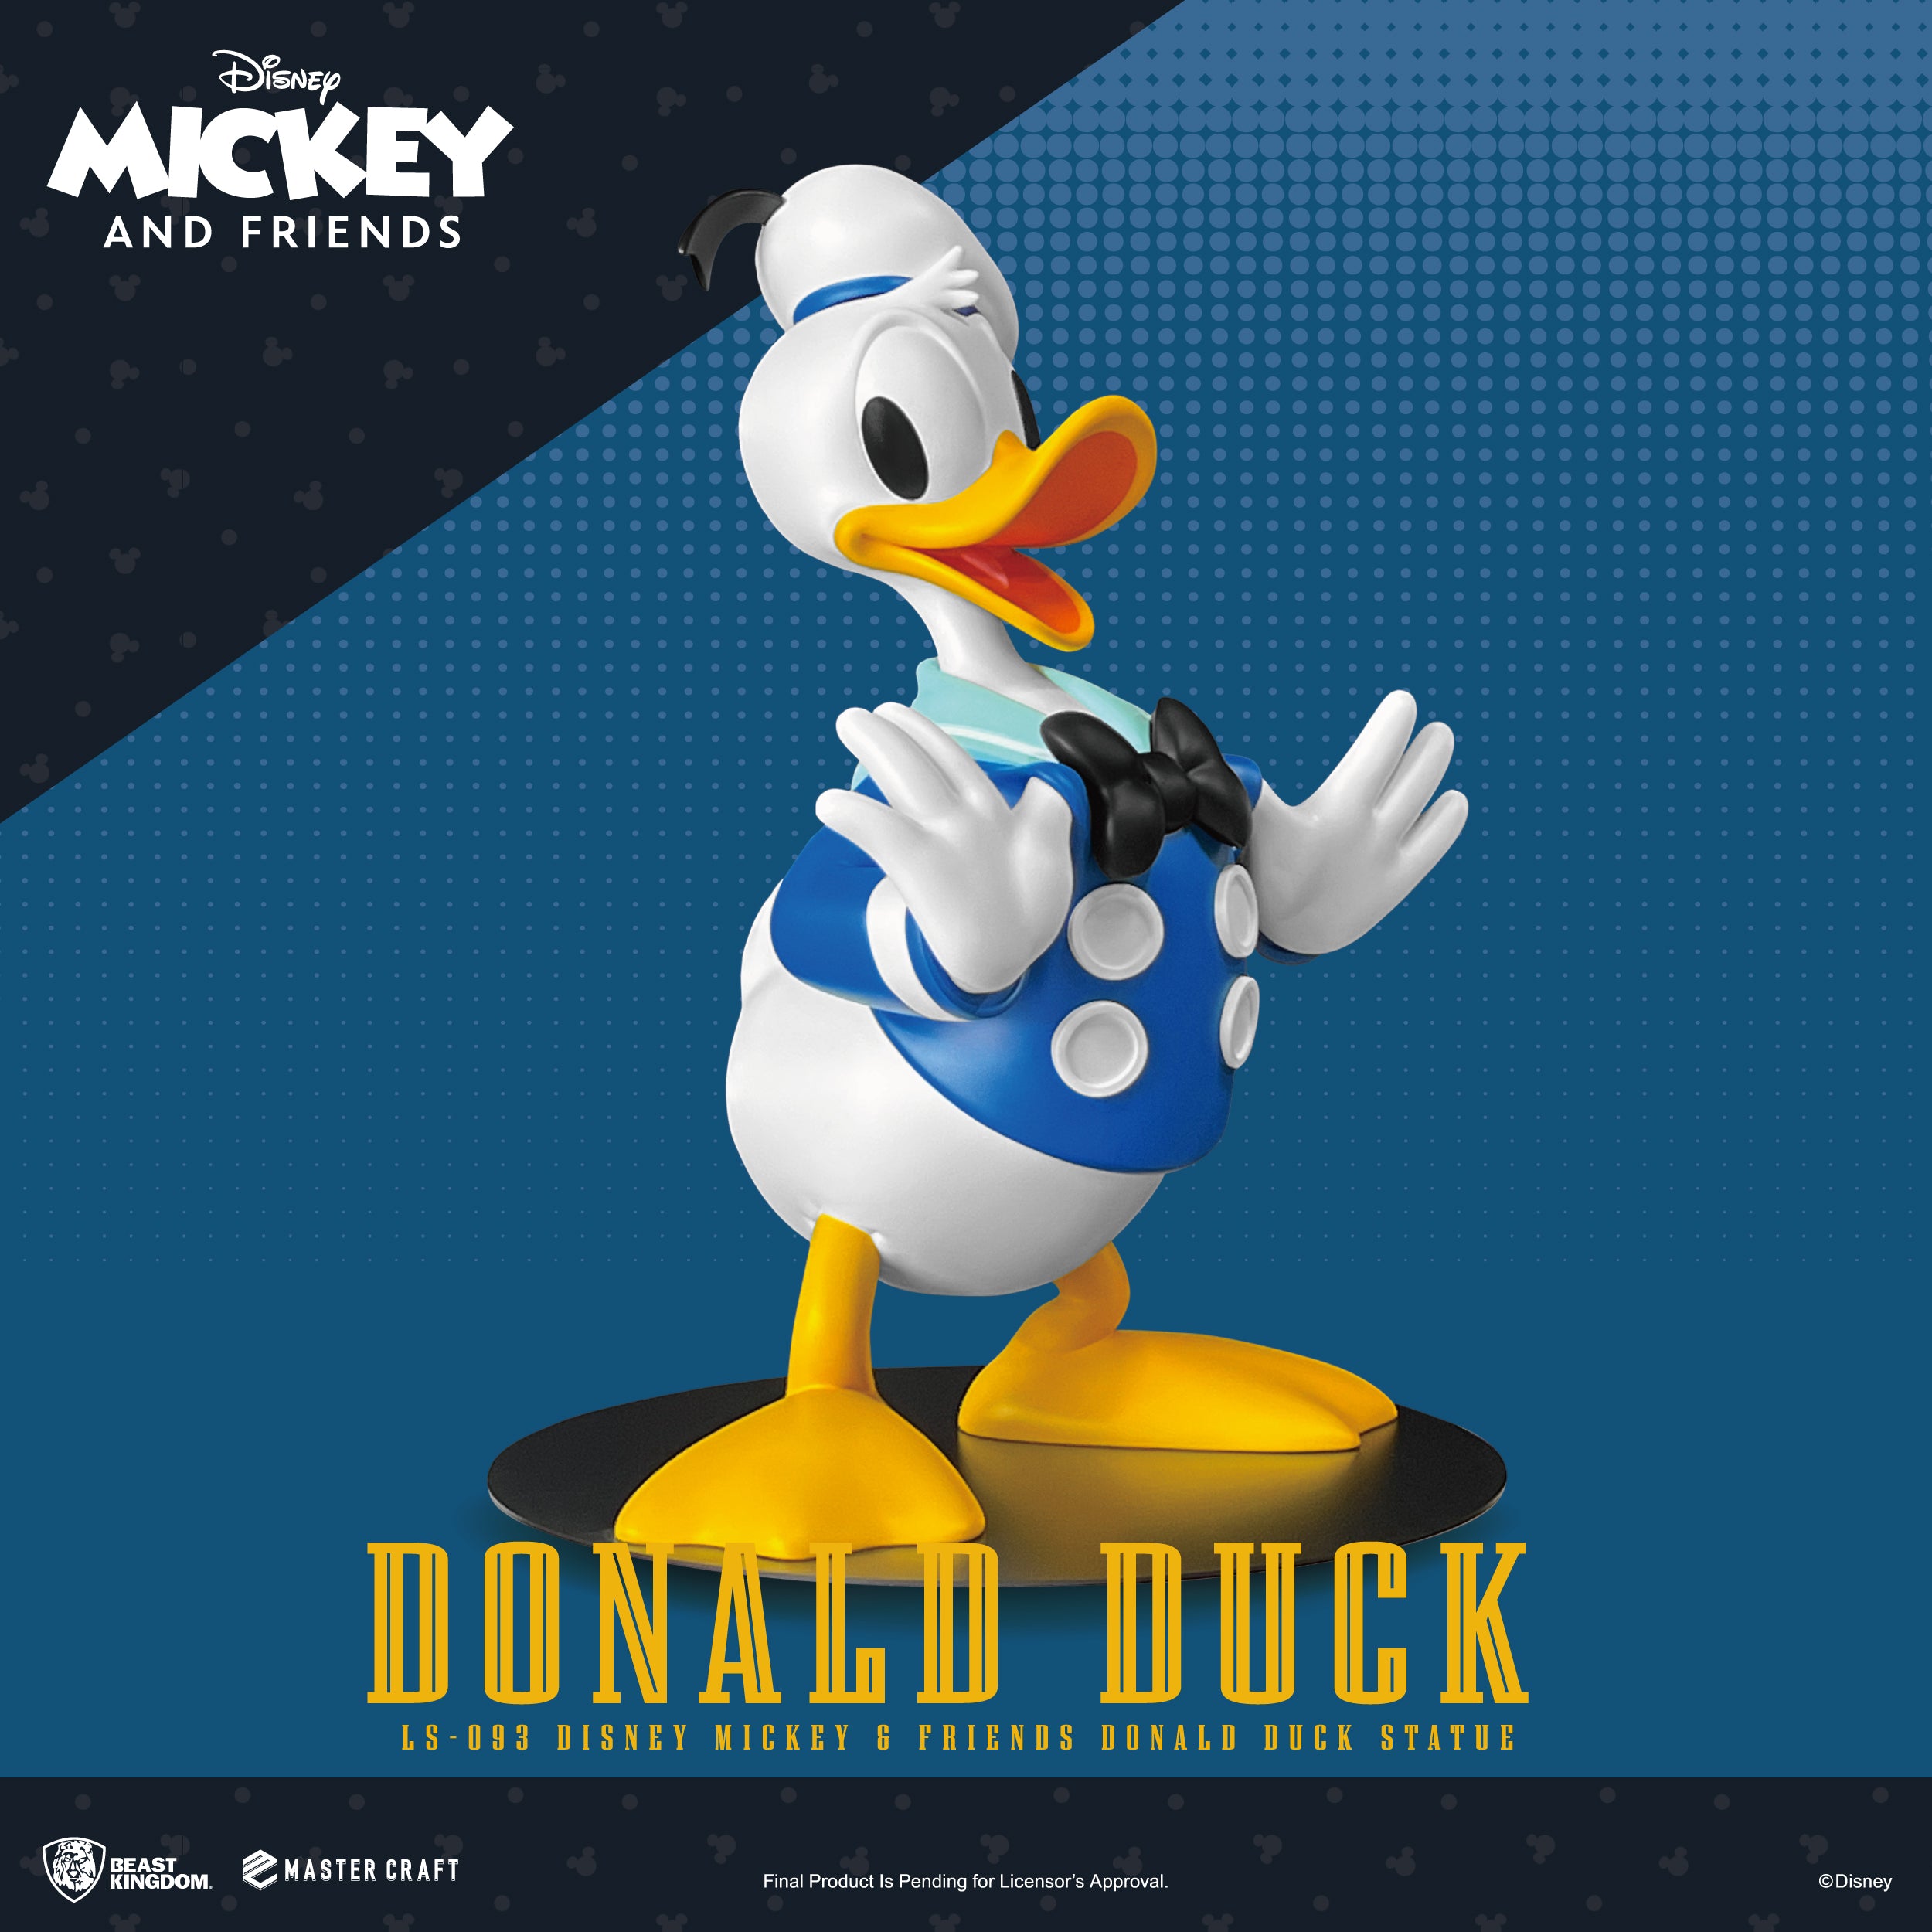 Beast Kingdom LS-093 Disney Mickey & Friends Donald Duck Statue